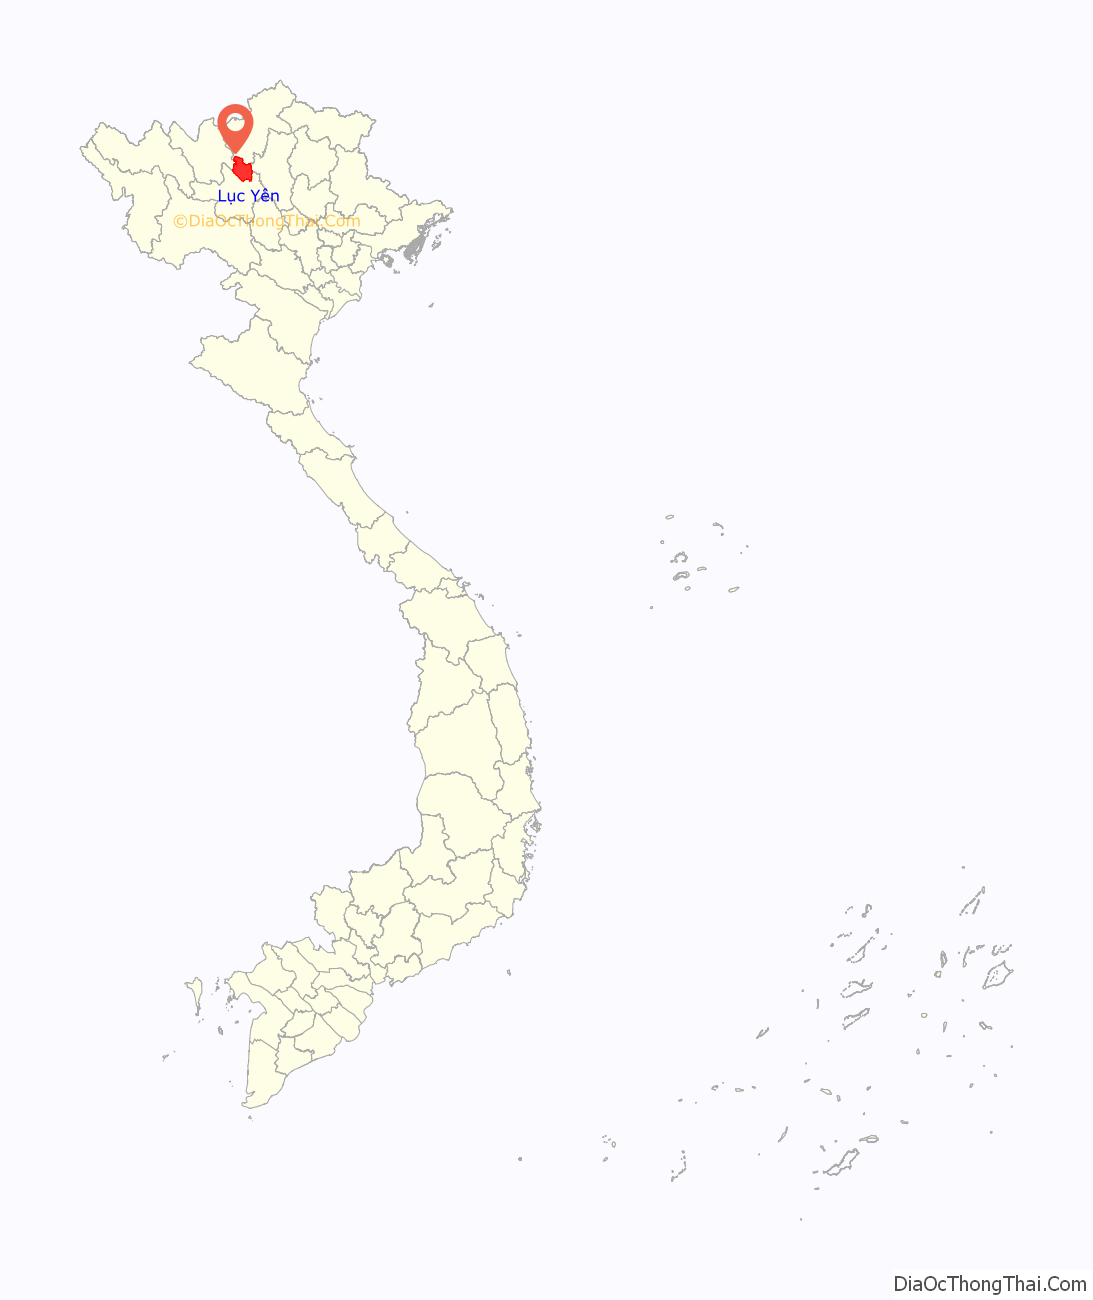 Huyện Lục Yên ở đâu? Vị trí của huyện Lục Yên